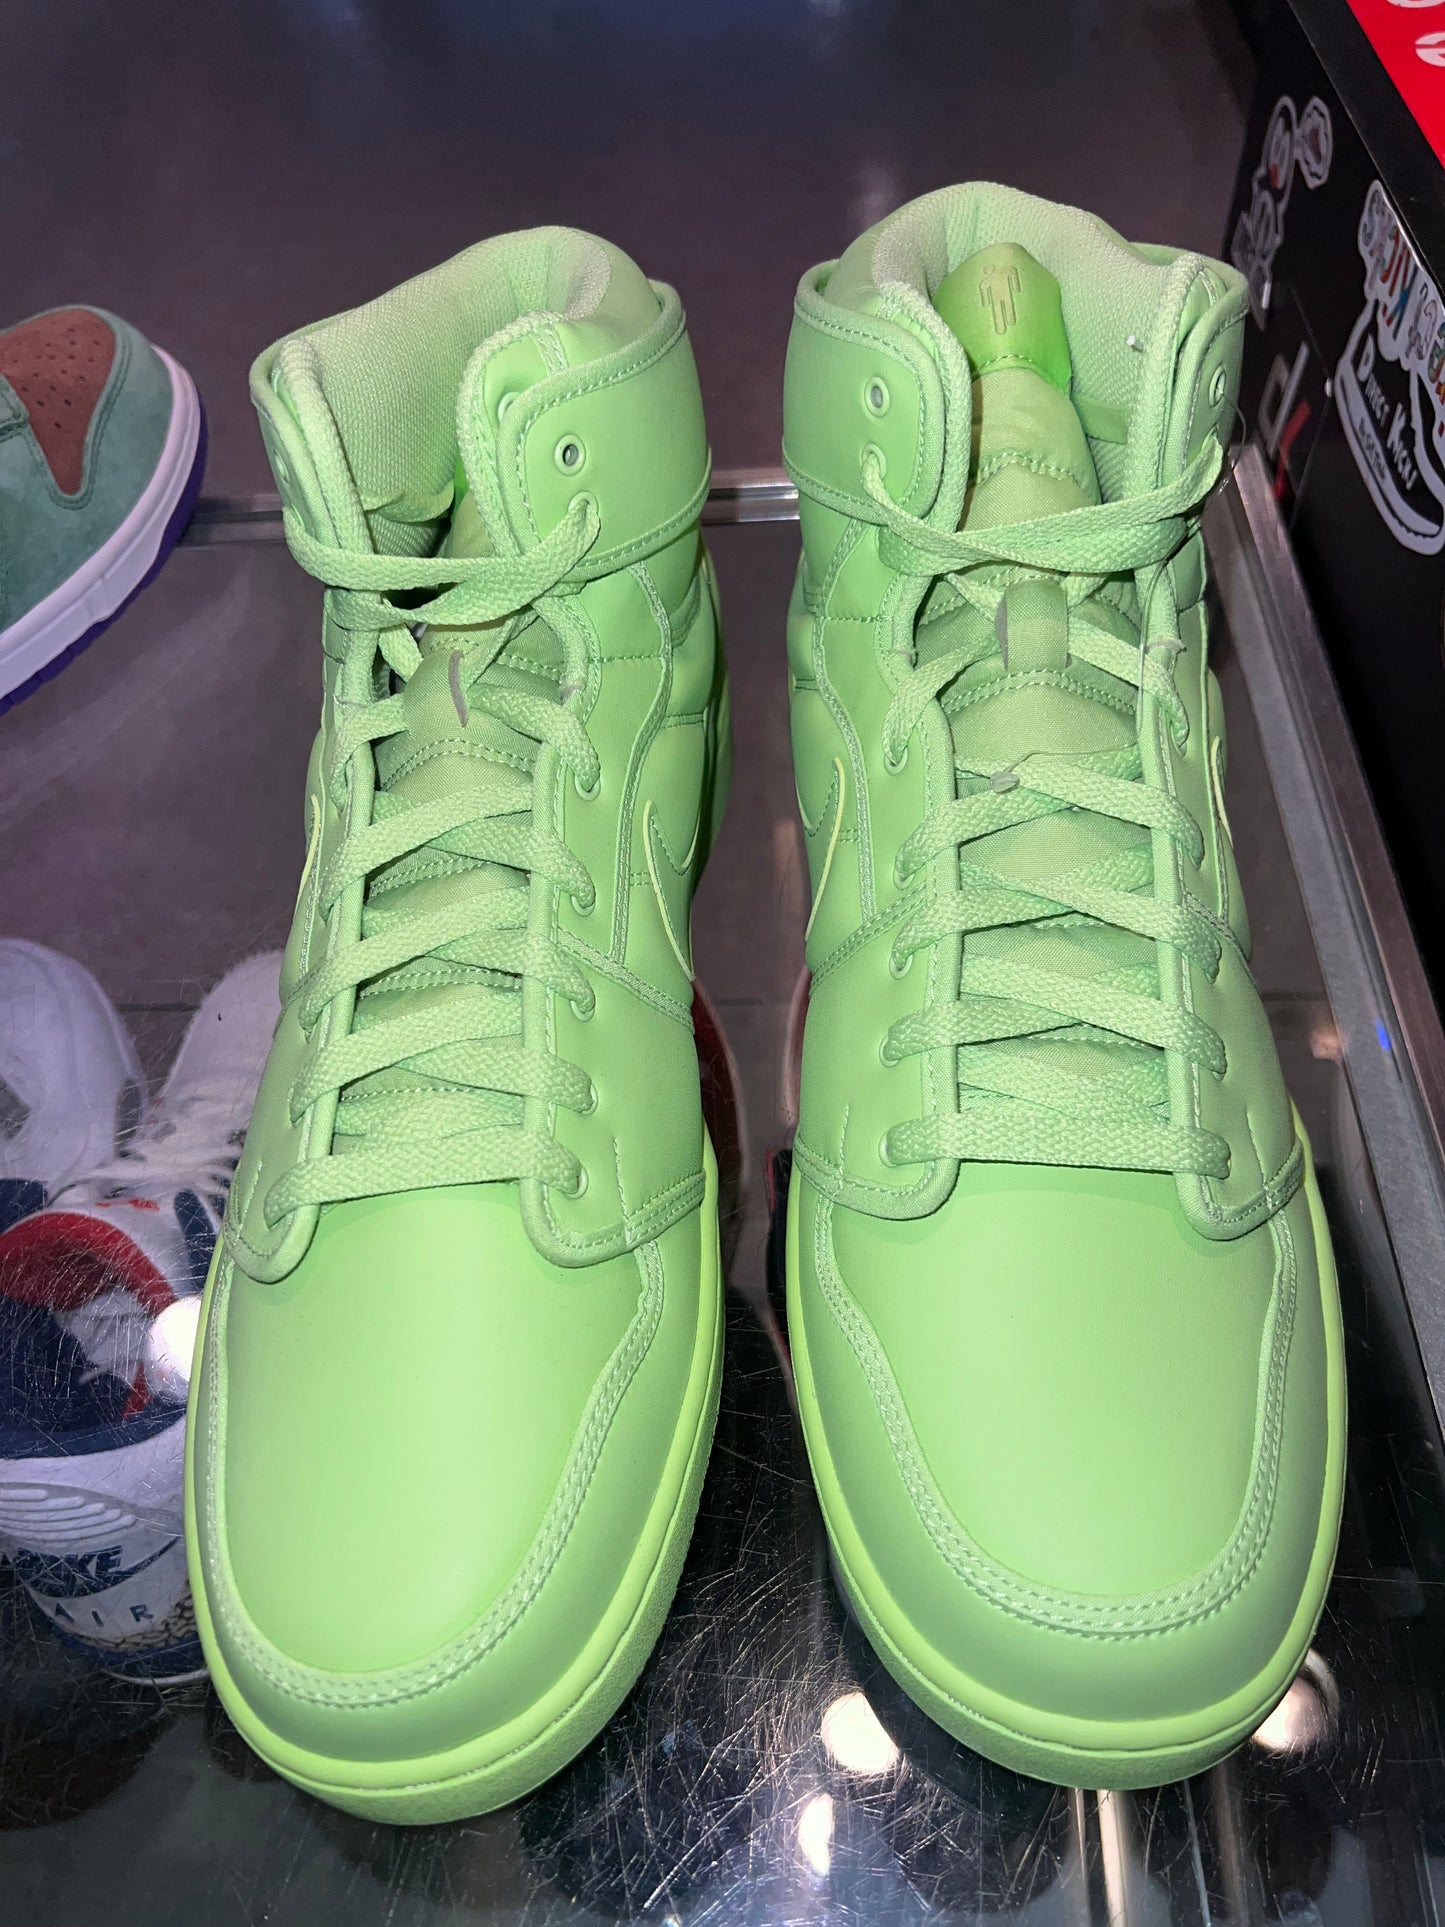 Size 13 (14.5w) Air Jordan 1 AJKO “Ghost Green Billie Eilish” Brand New (Mall)